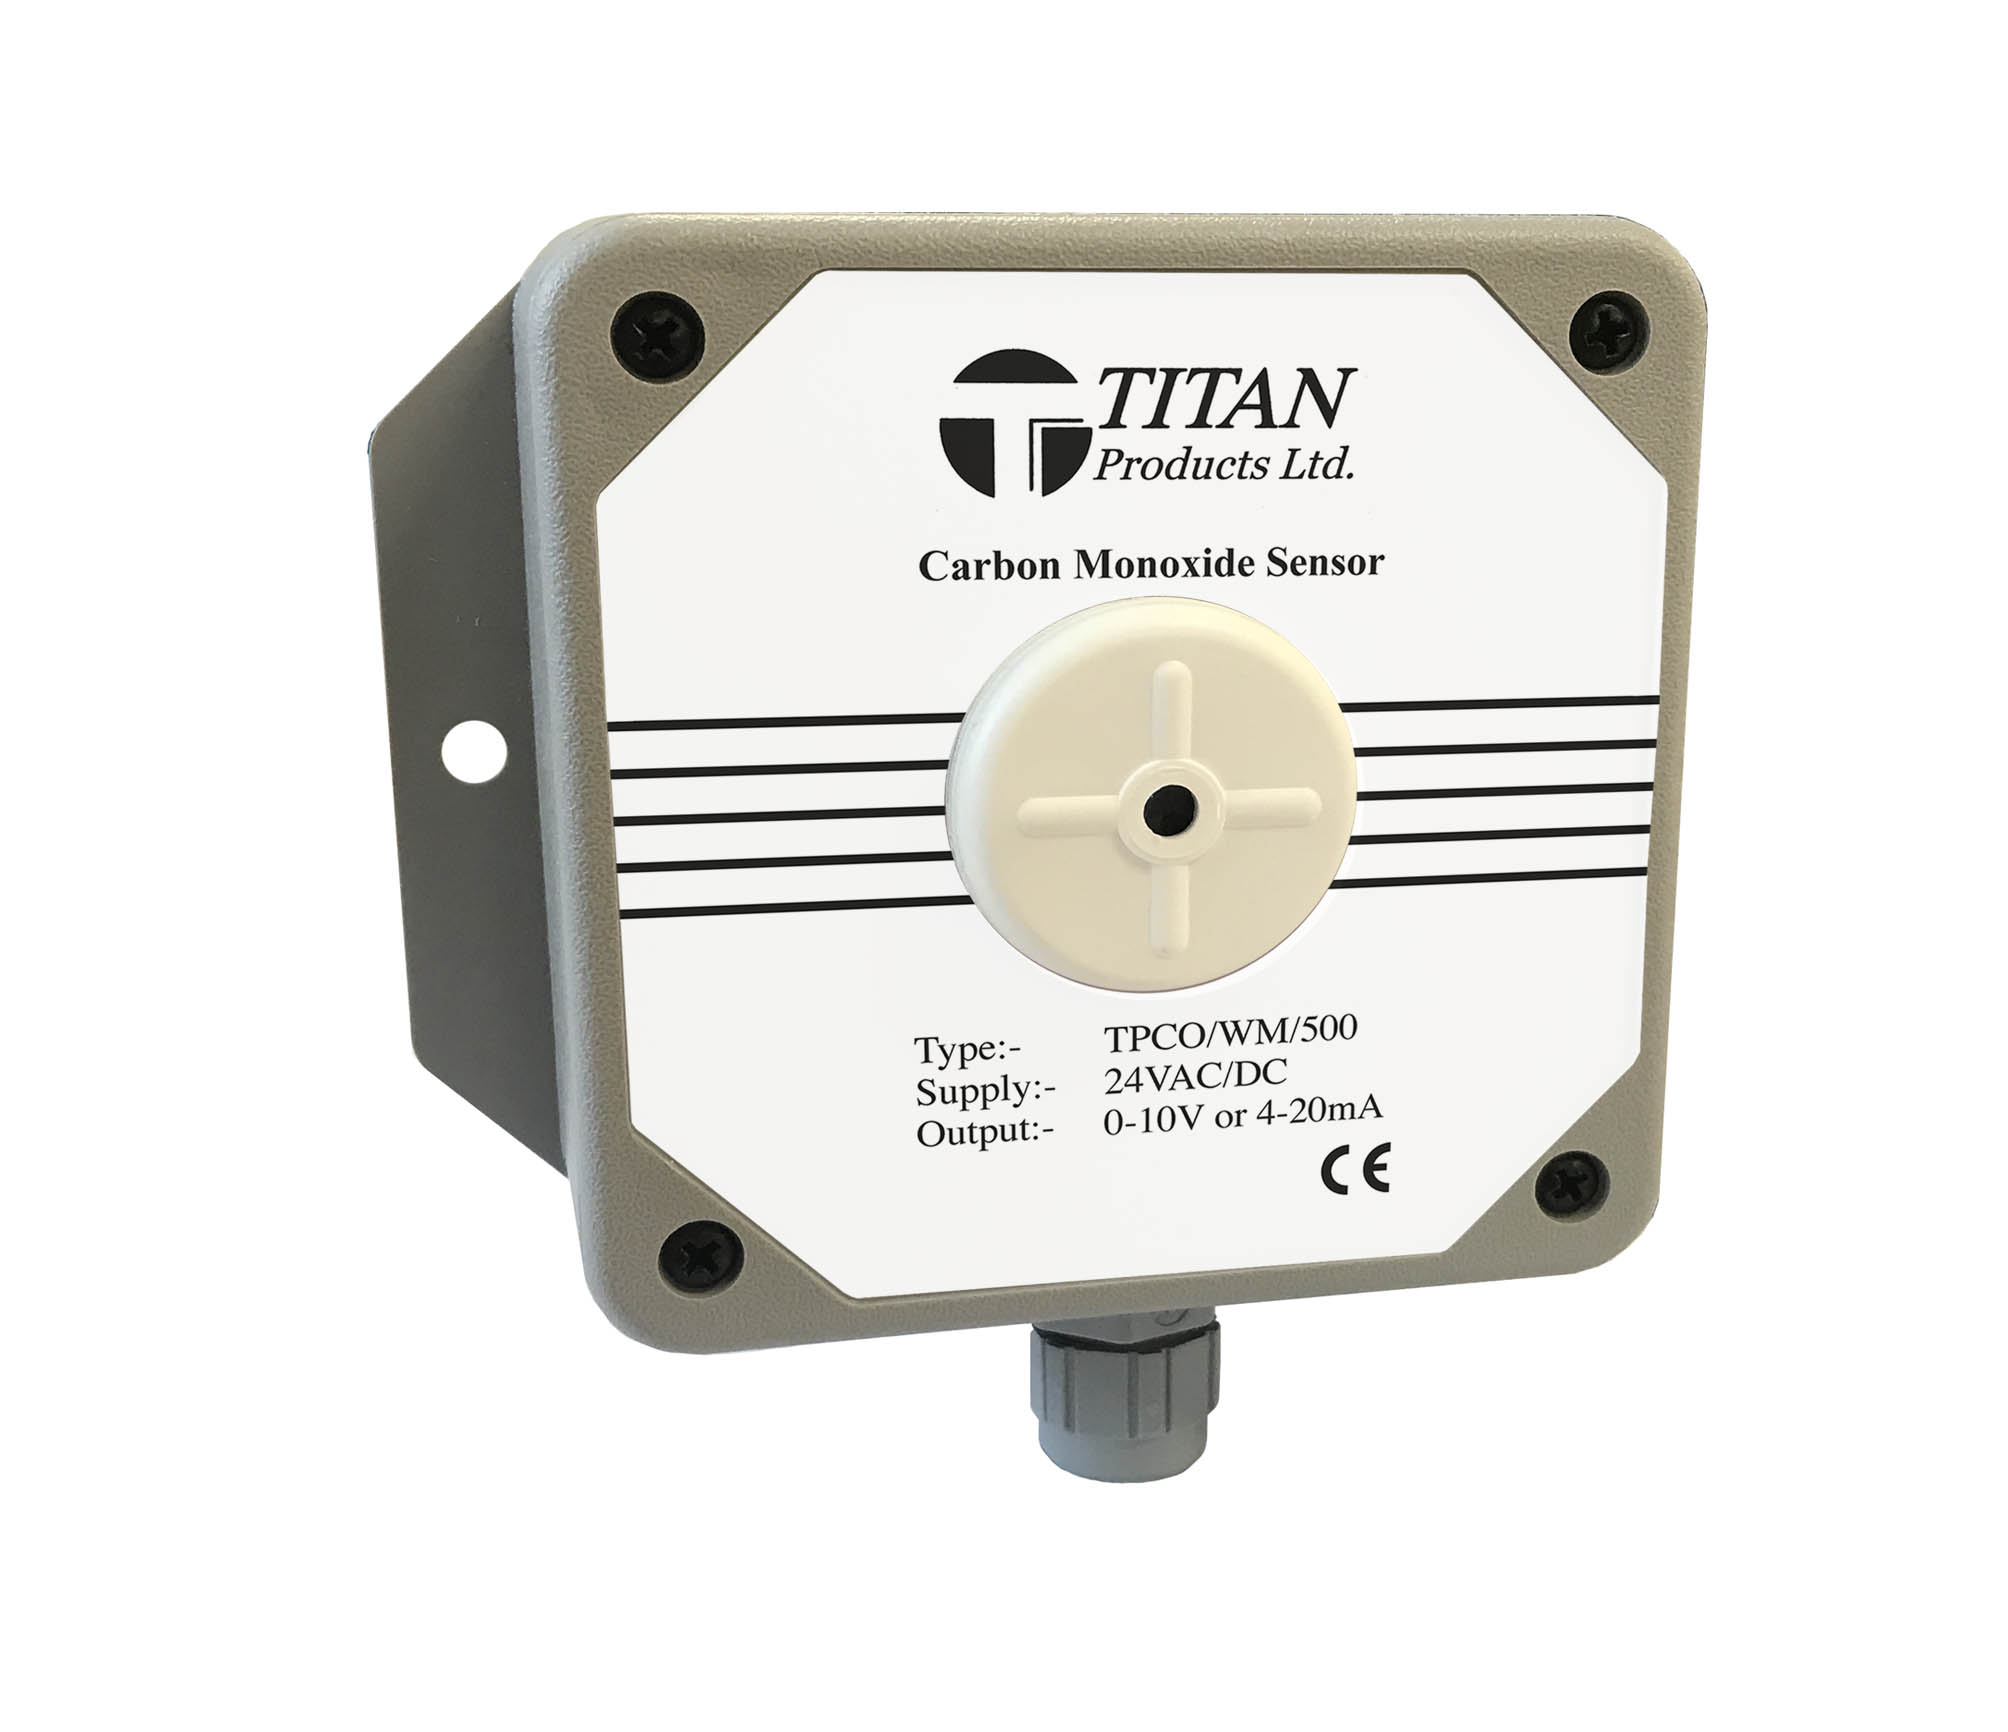 Titan Products Release Improved Carbon Monoxide Sensors